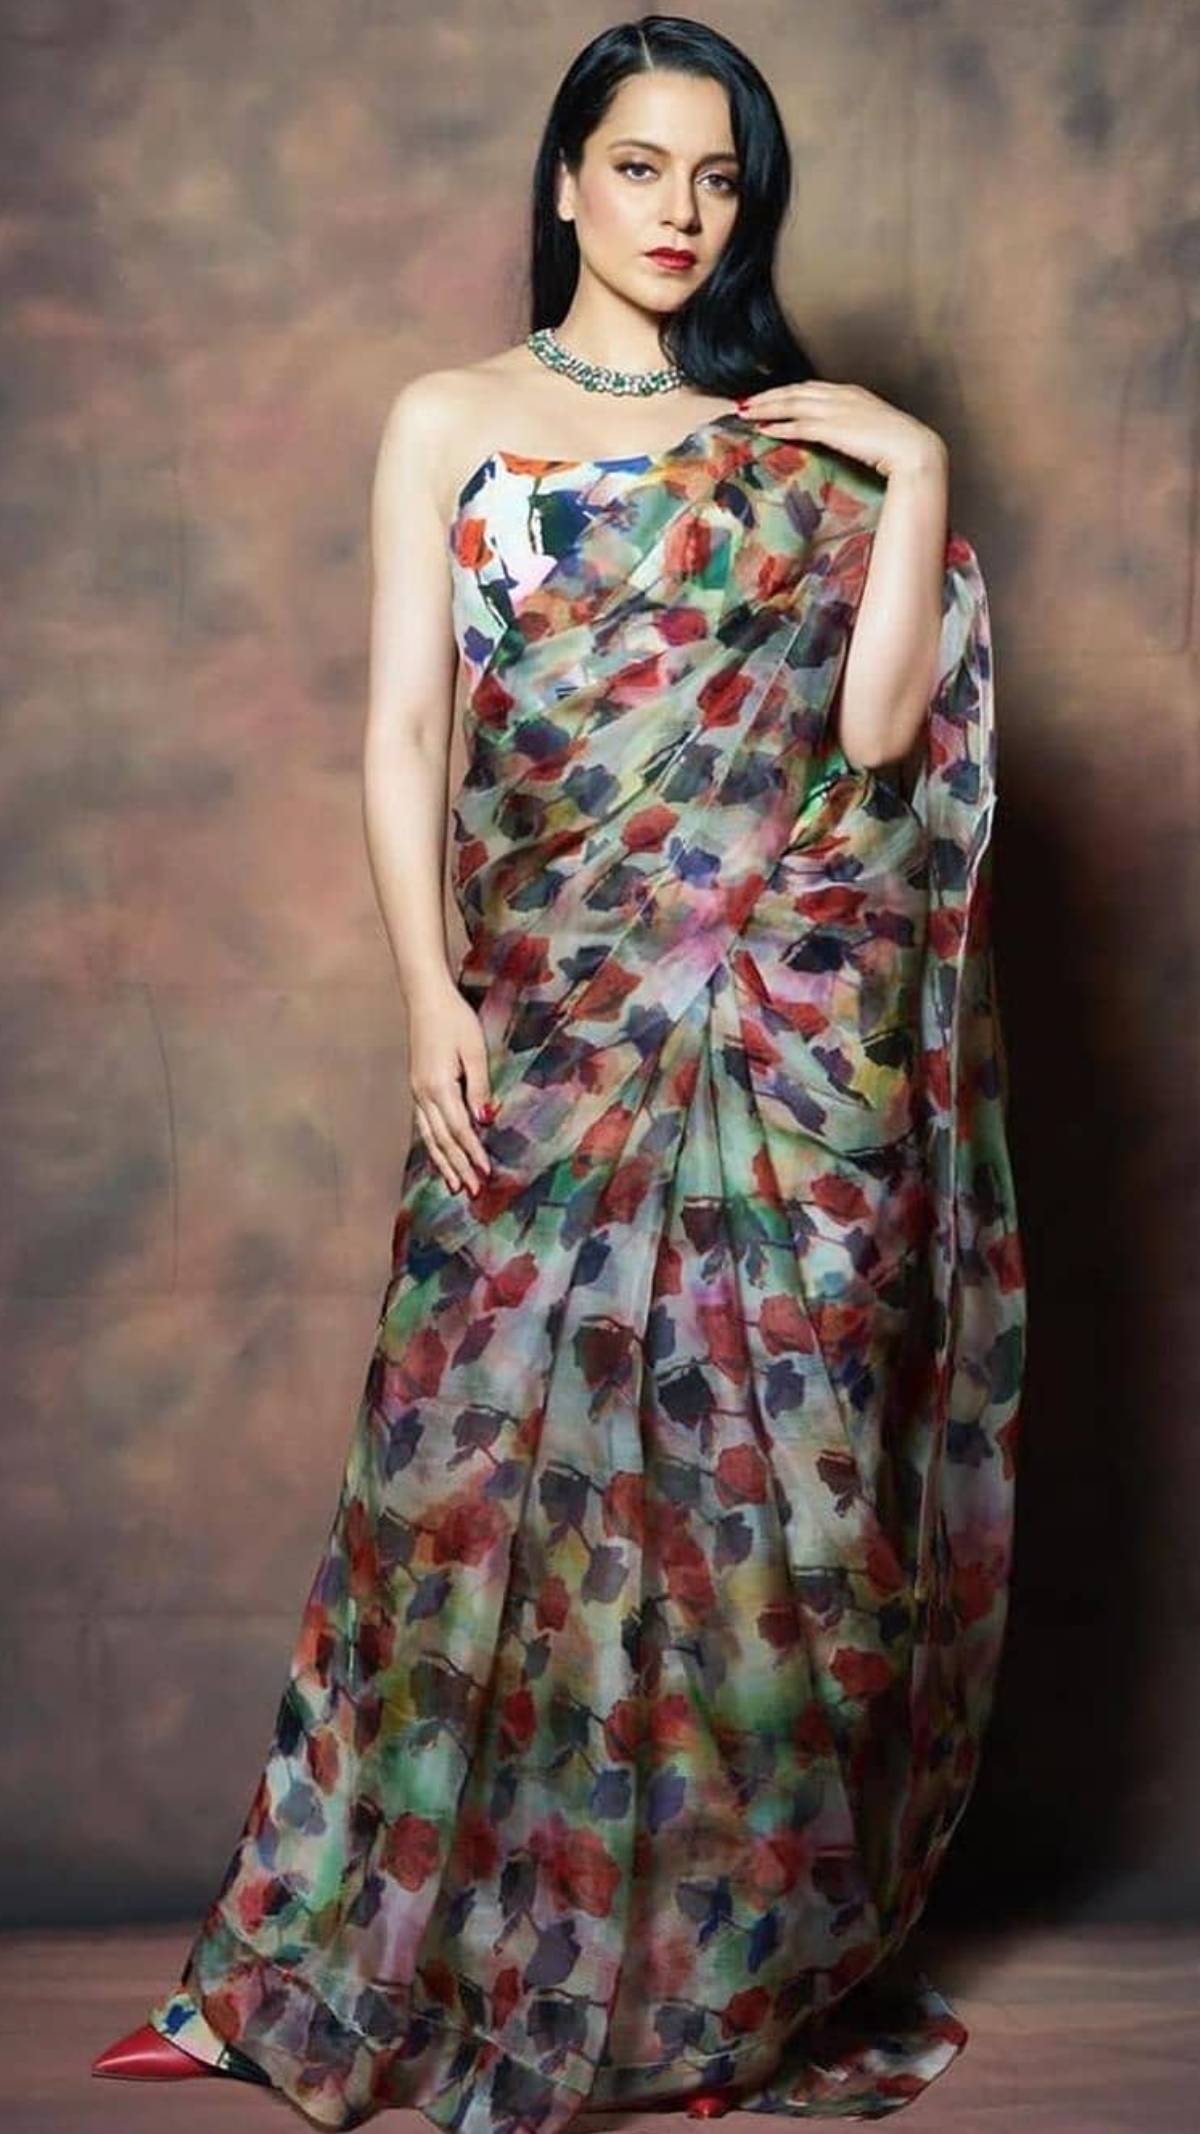 Kangana Ranaut looks spell-binding in the rose-printed saree